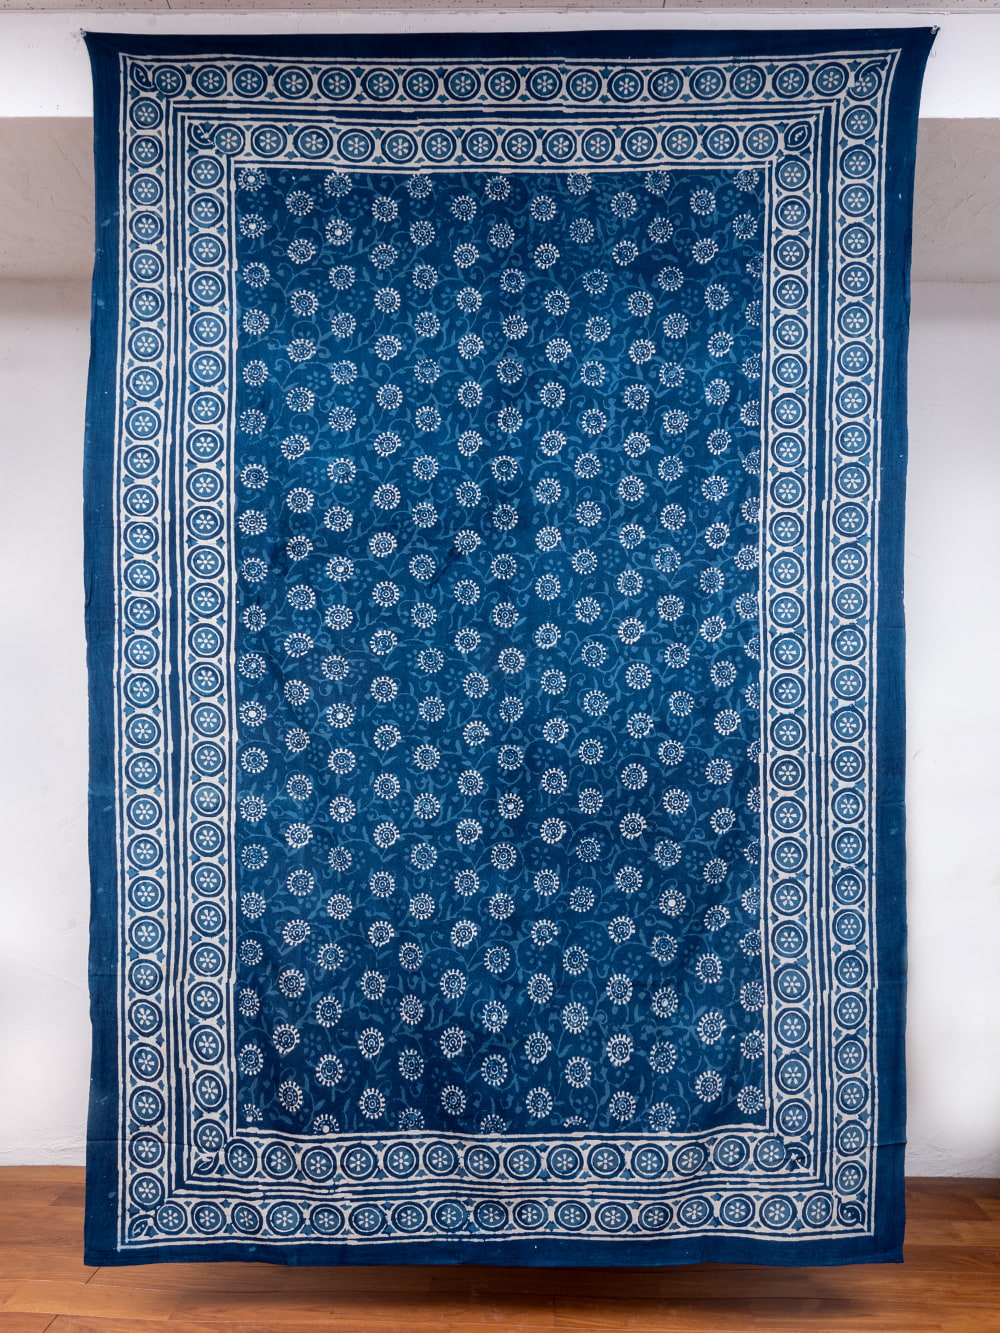 マルチクロス - 藍染め　更紗模様〔147cm×225〕大きな布1枚目の説明写真です